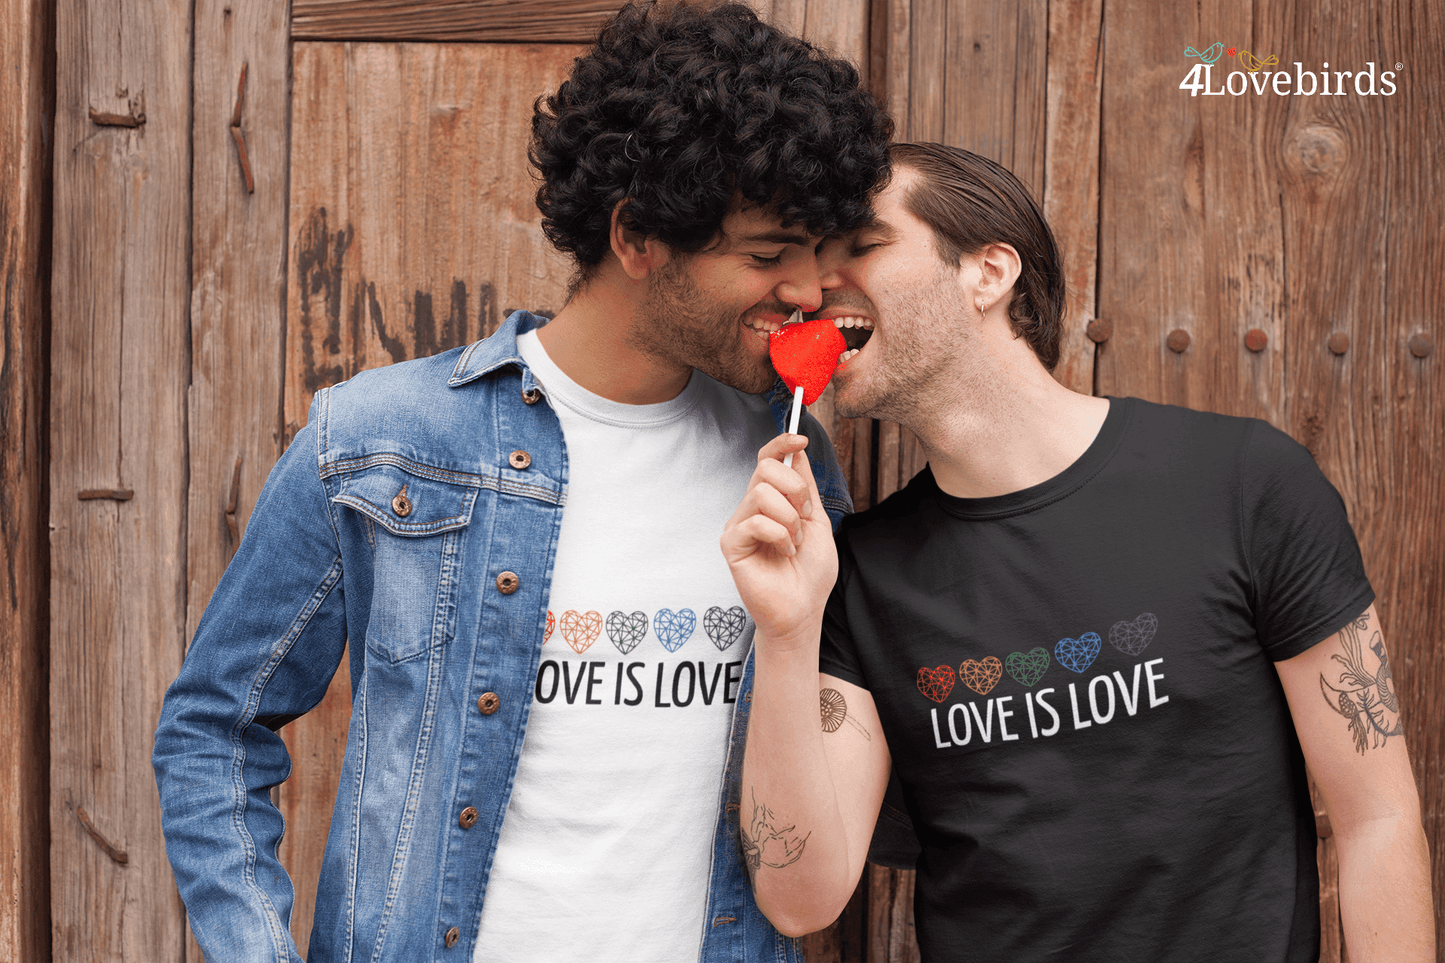 Love is Love Hoodie, LGBT Sweatshirt, Pride Longsleeve, Equality, Love is Love, LGBT Outfit, Love Wins, Rainbow Pride Shirt - 4Lovebirds